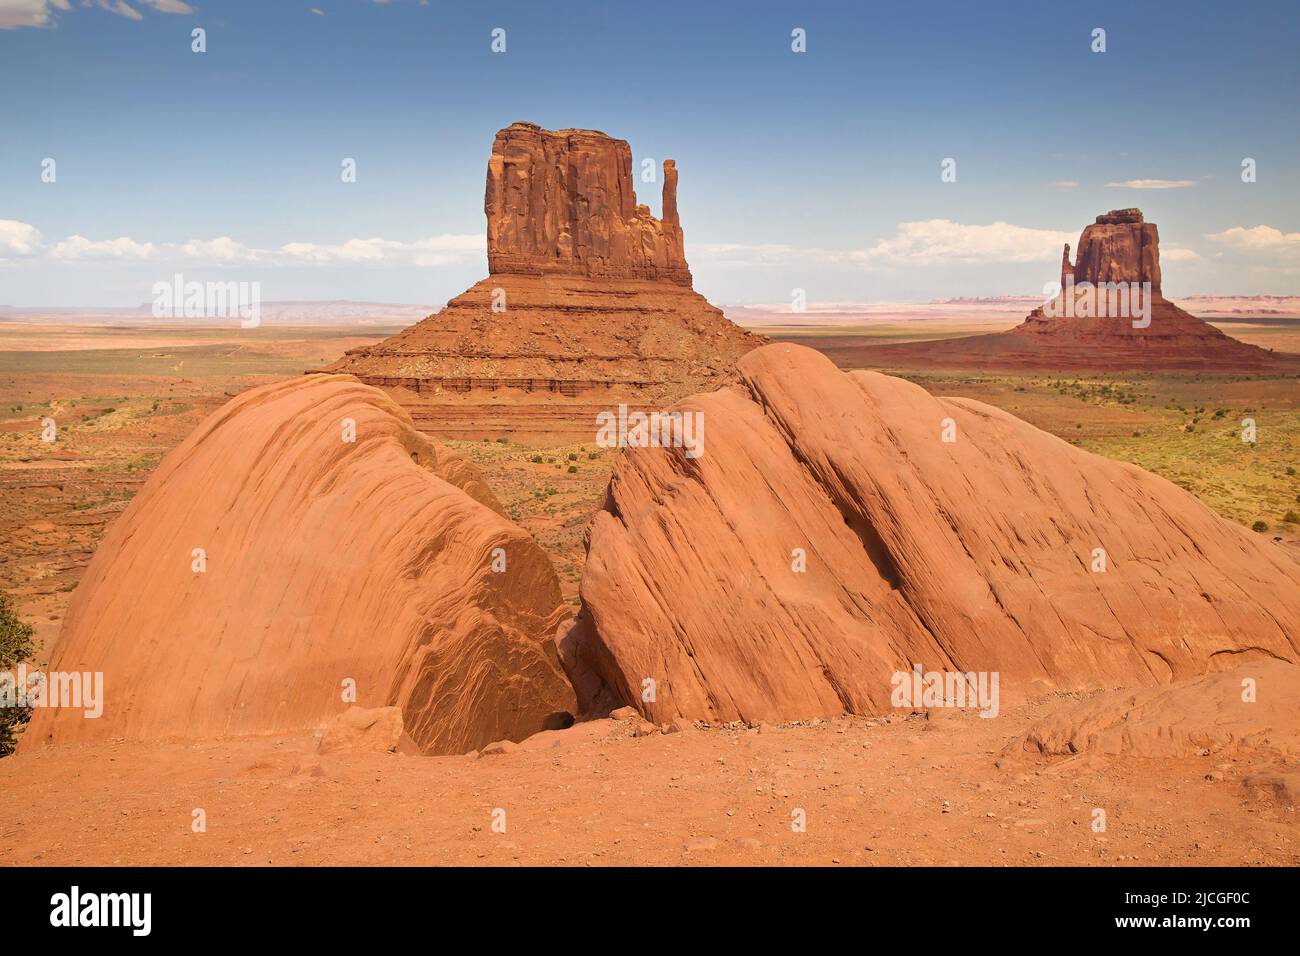 Taylor Rock e Mittens in Monument Valley, Arizona, Stati Uniti. Foto Stock